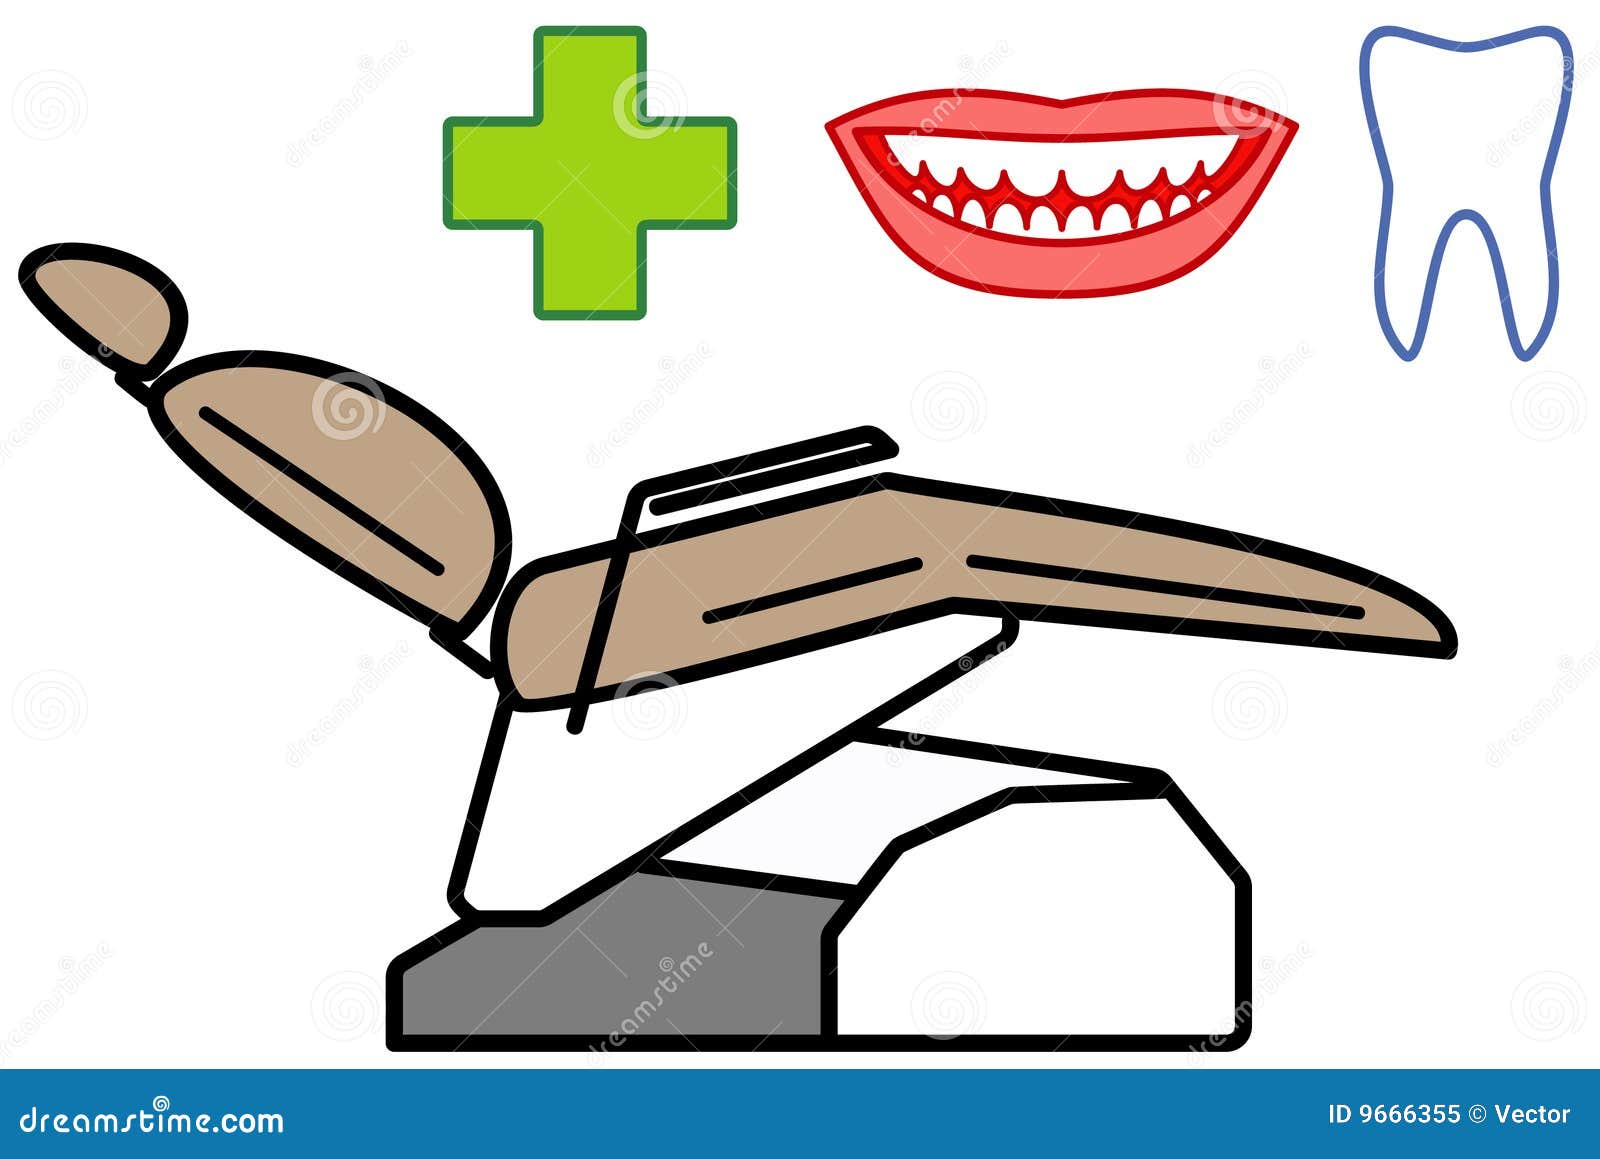 Vettore dentale dell'illustrazione di cura. Bianco di vettore isolato illustrazioni della priorità bassa